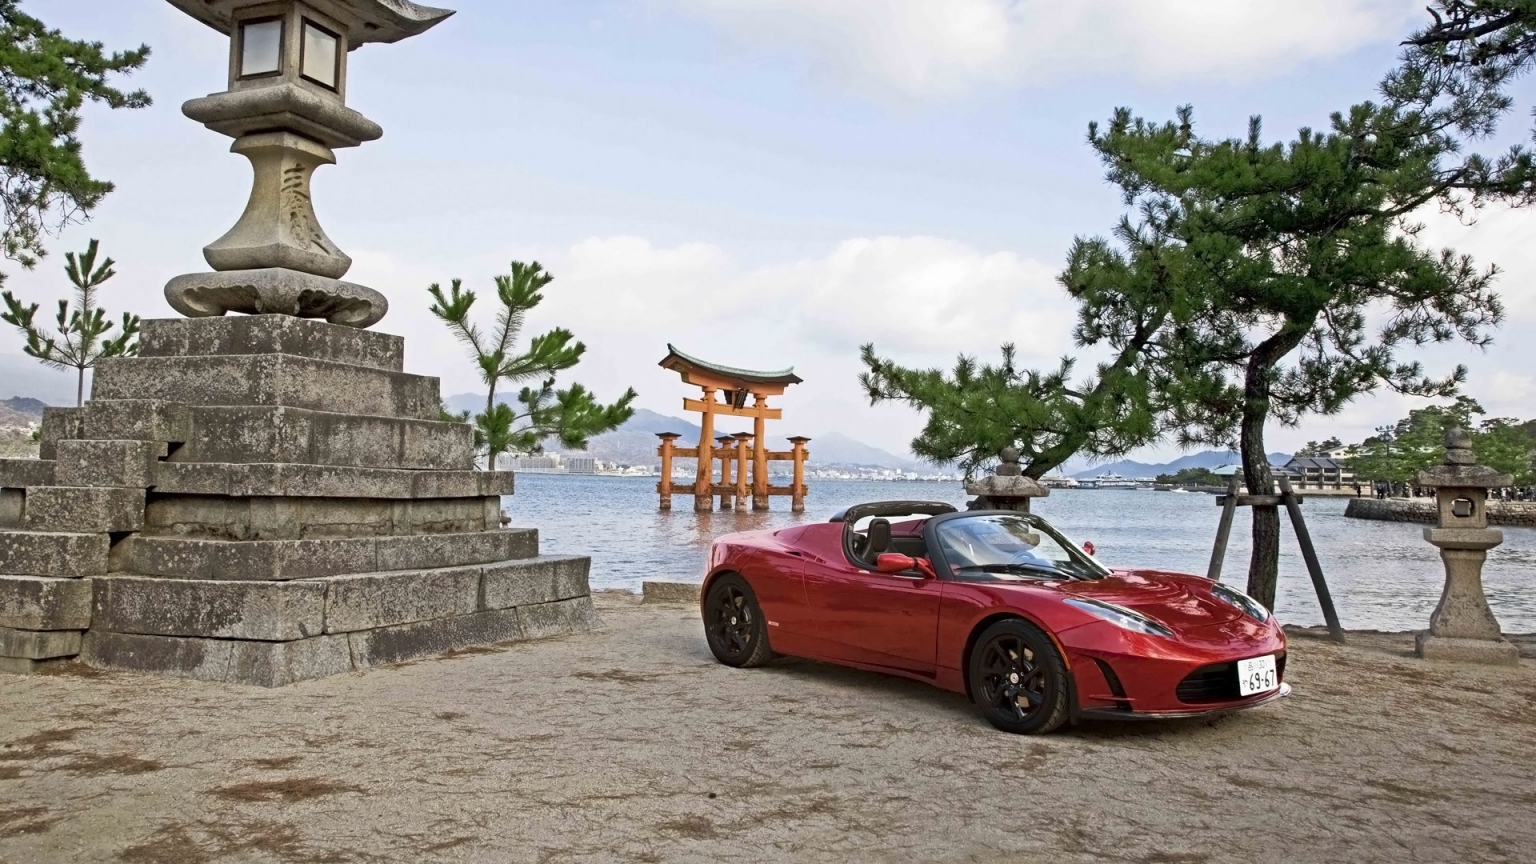 2012 Tesla Roadster Japan for 1536 x 864 HDTV resolution